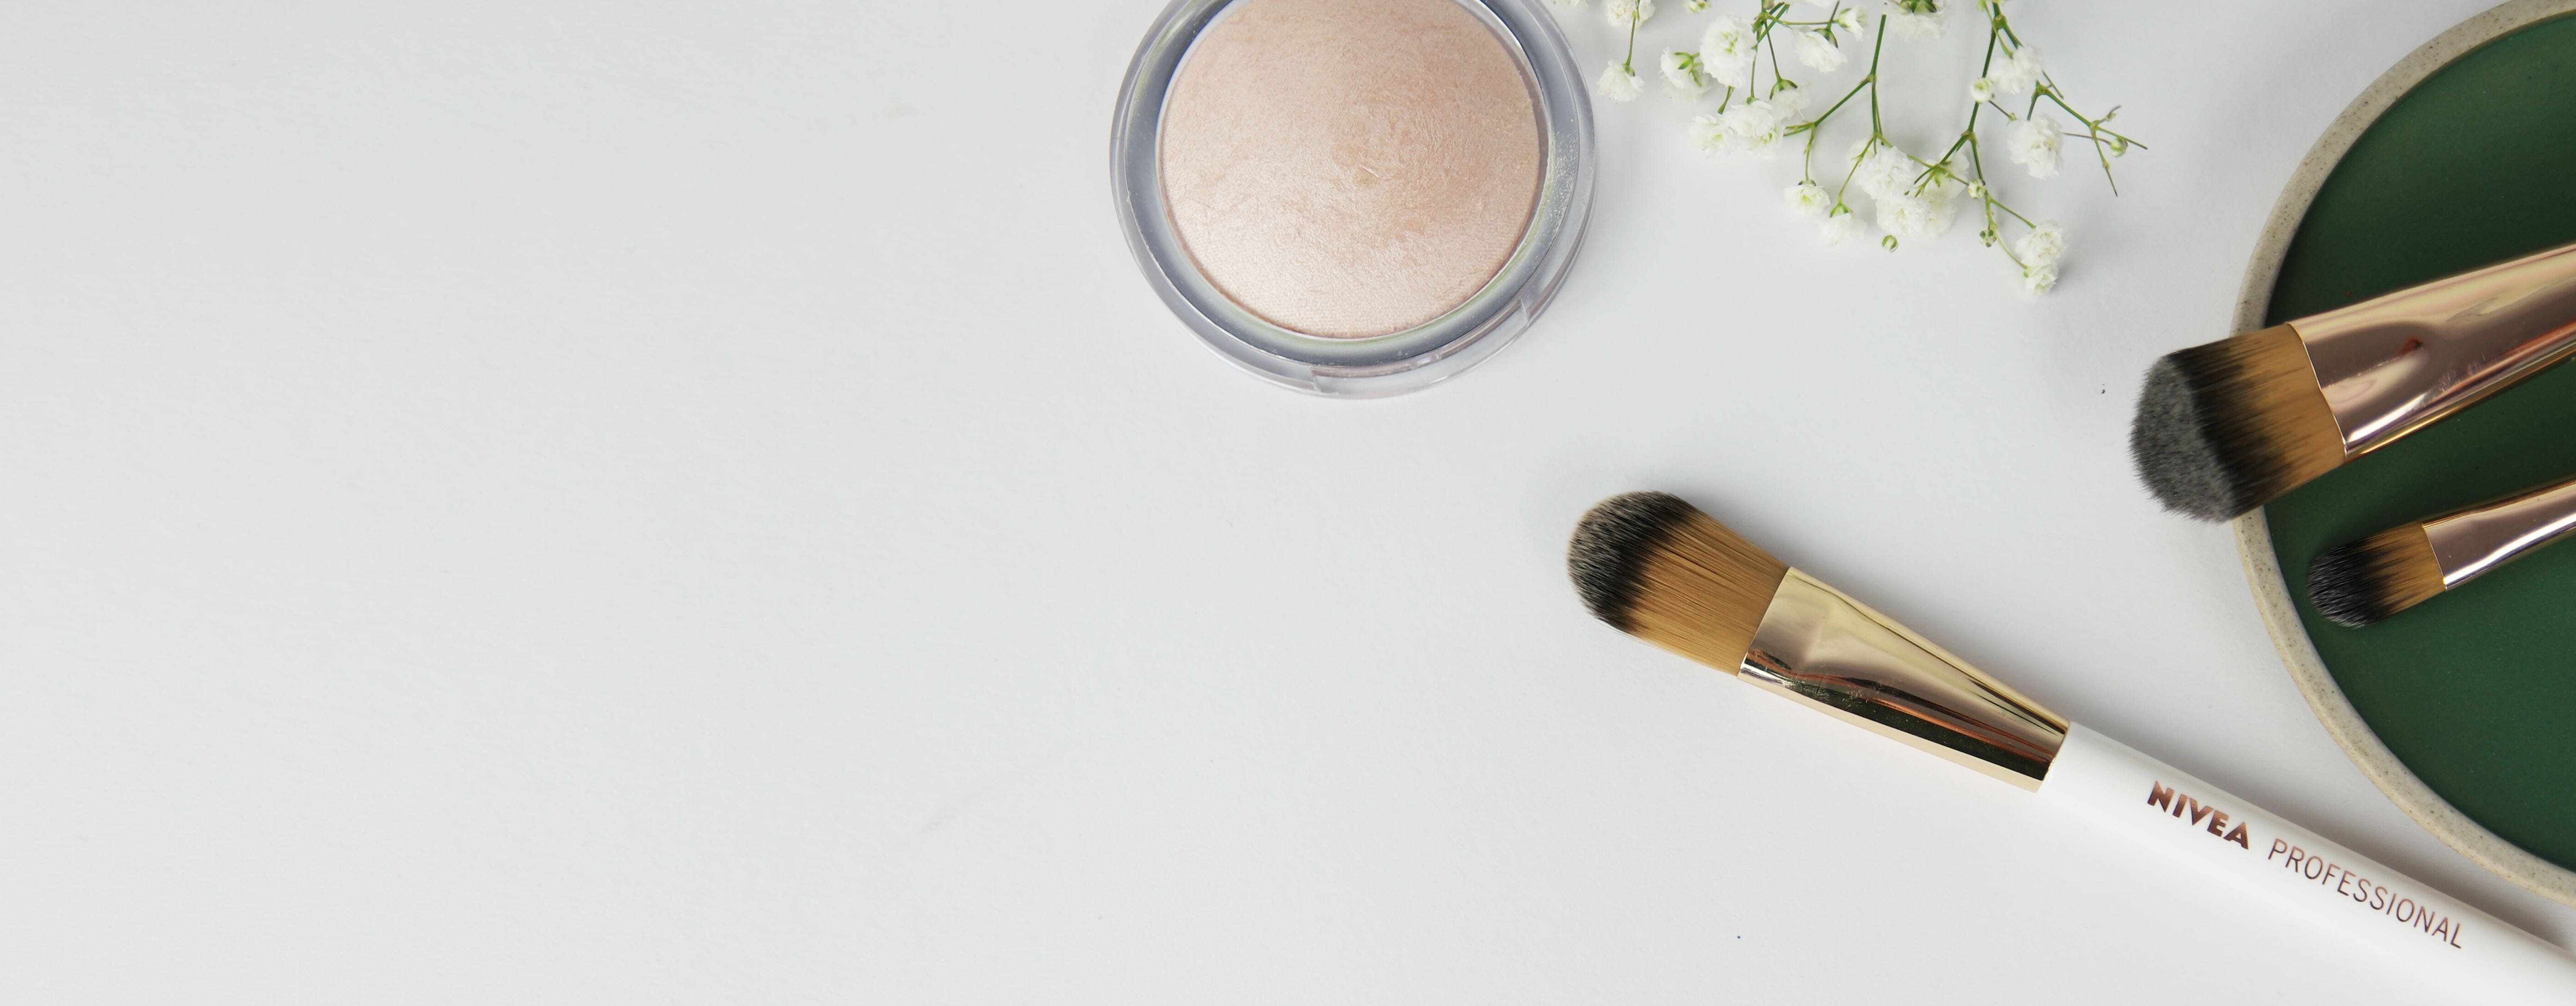 Make-up-Pinsel und Schwämme: Was brauche ich wann? – NIVEA